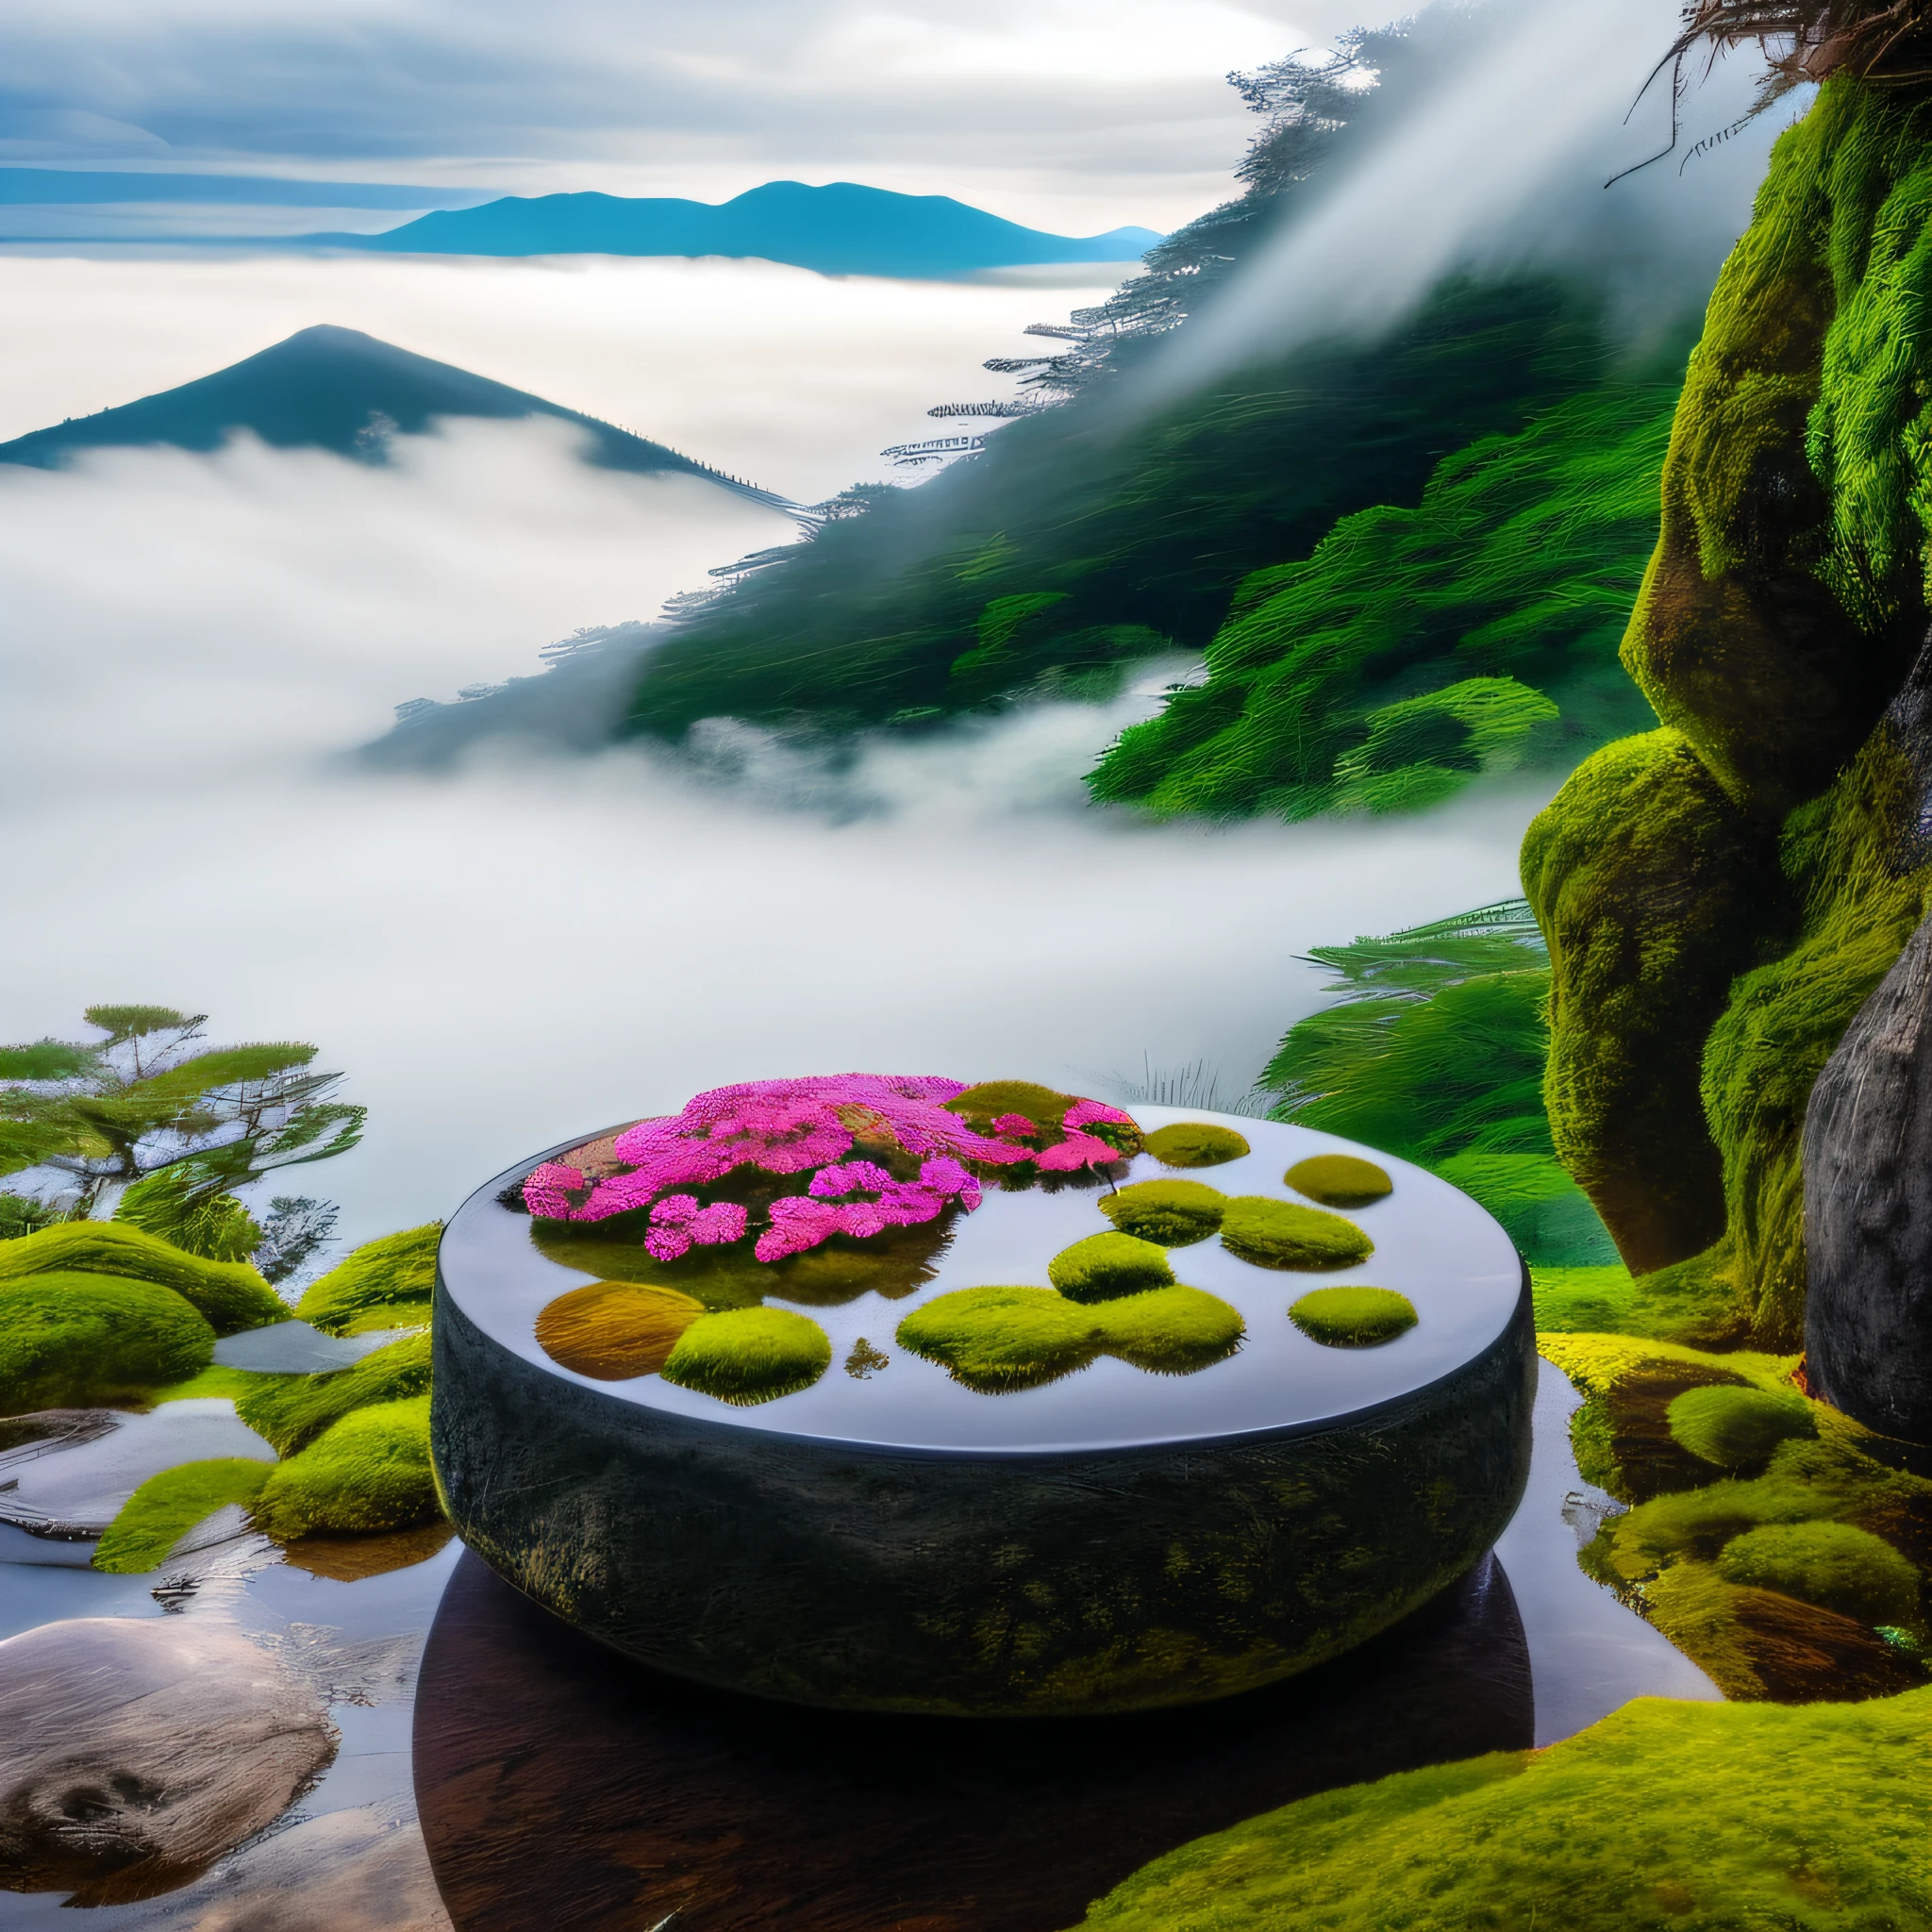 山中间有一张桌子，上面有苔藓和花朵, 日本自然, lush 日本風景, 超現實的懷茲花, 浮山, 日本山, 令人驚嘆的自然背景, 神秘的環境, 鬱鬱蔥蔥的花園和溫泉上方, 漂浮在強大的禪宗狀態, 日本風景, 日本溫泉, 瀑布的薄霧, 美麗神秘